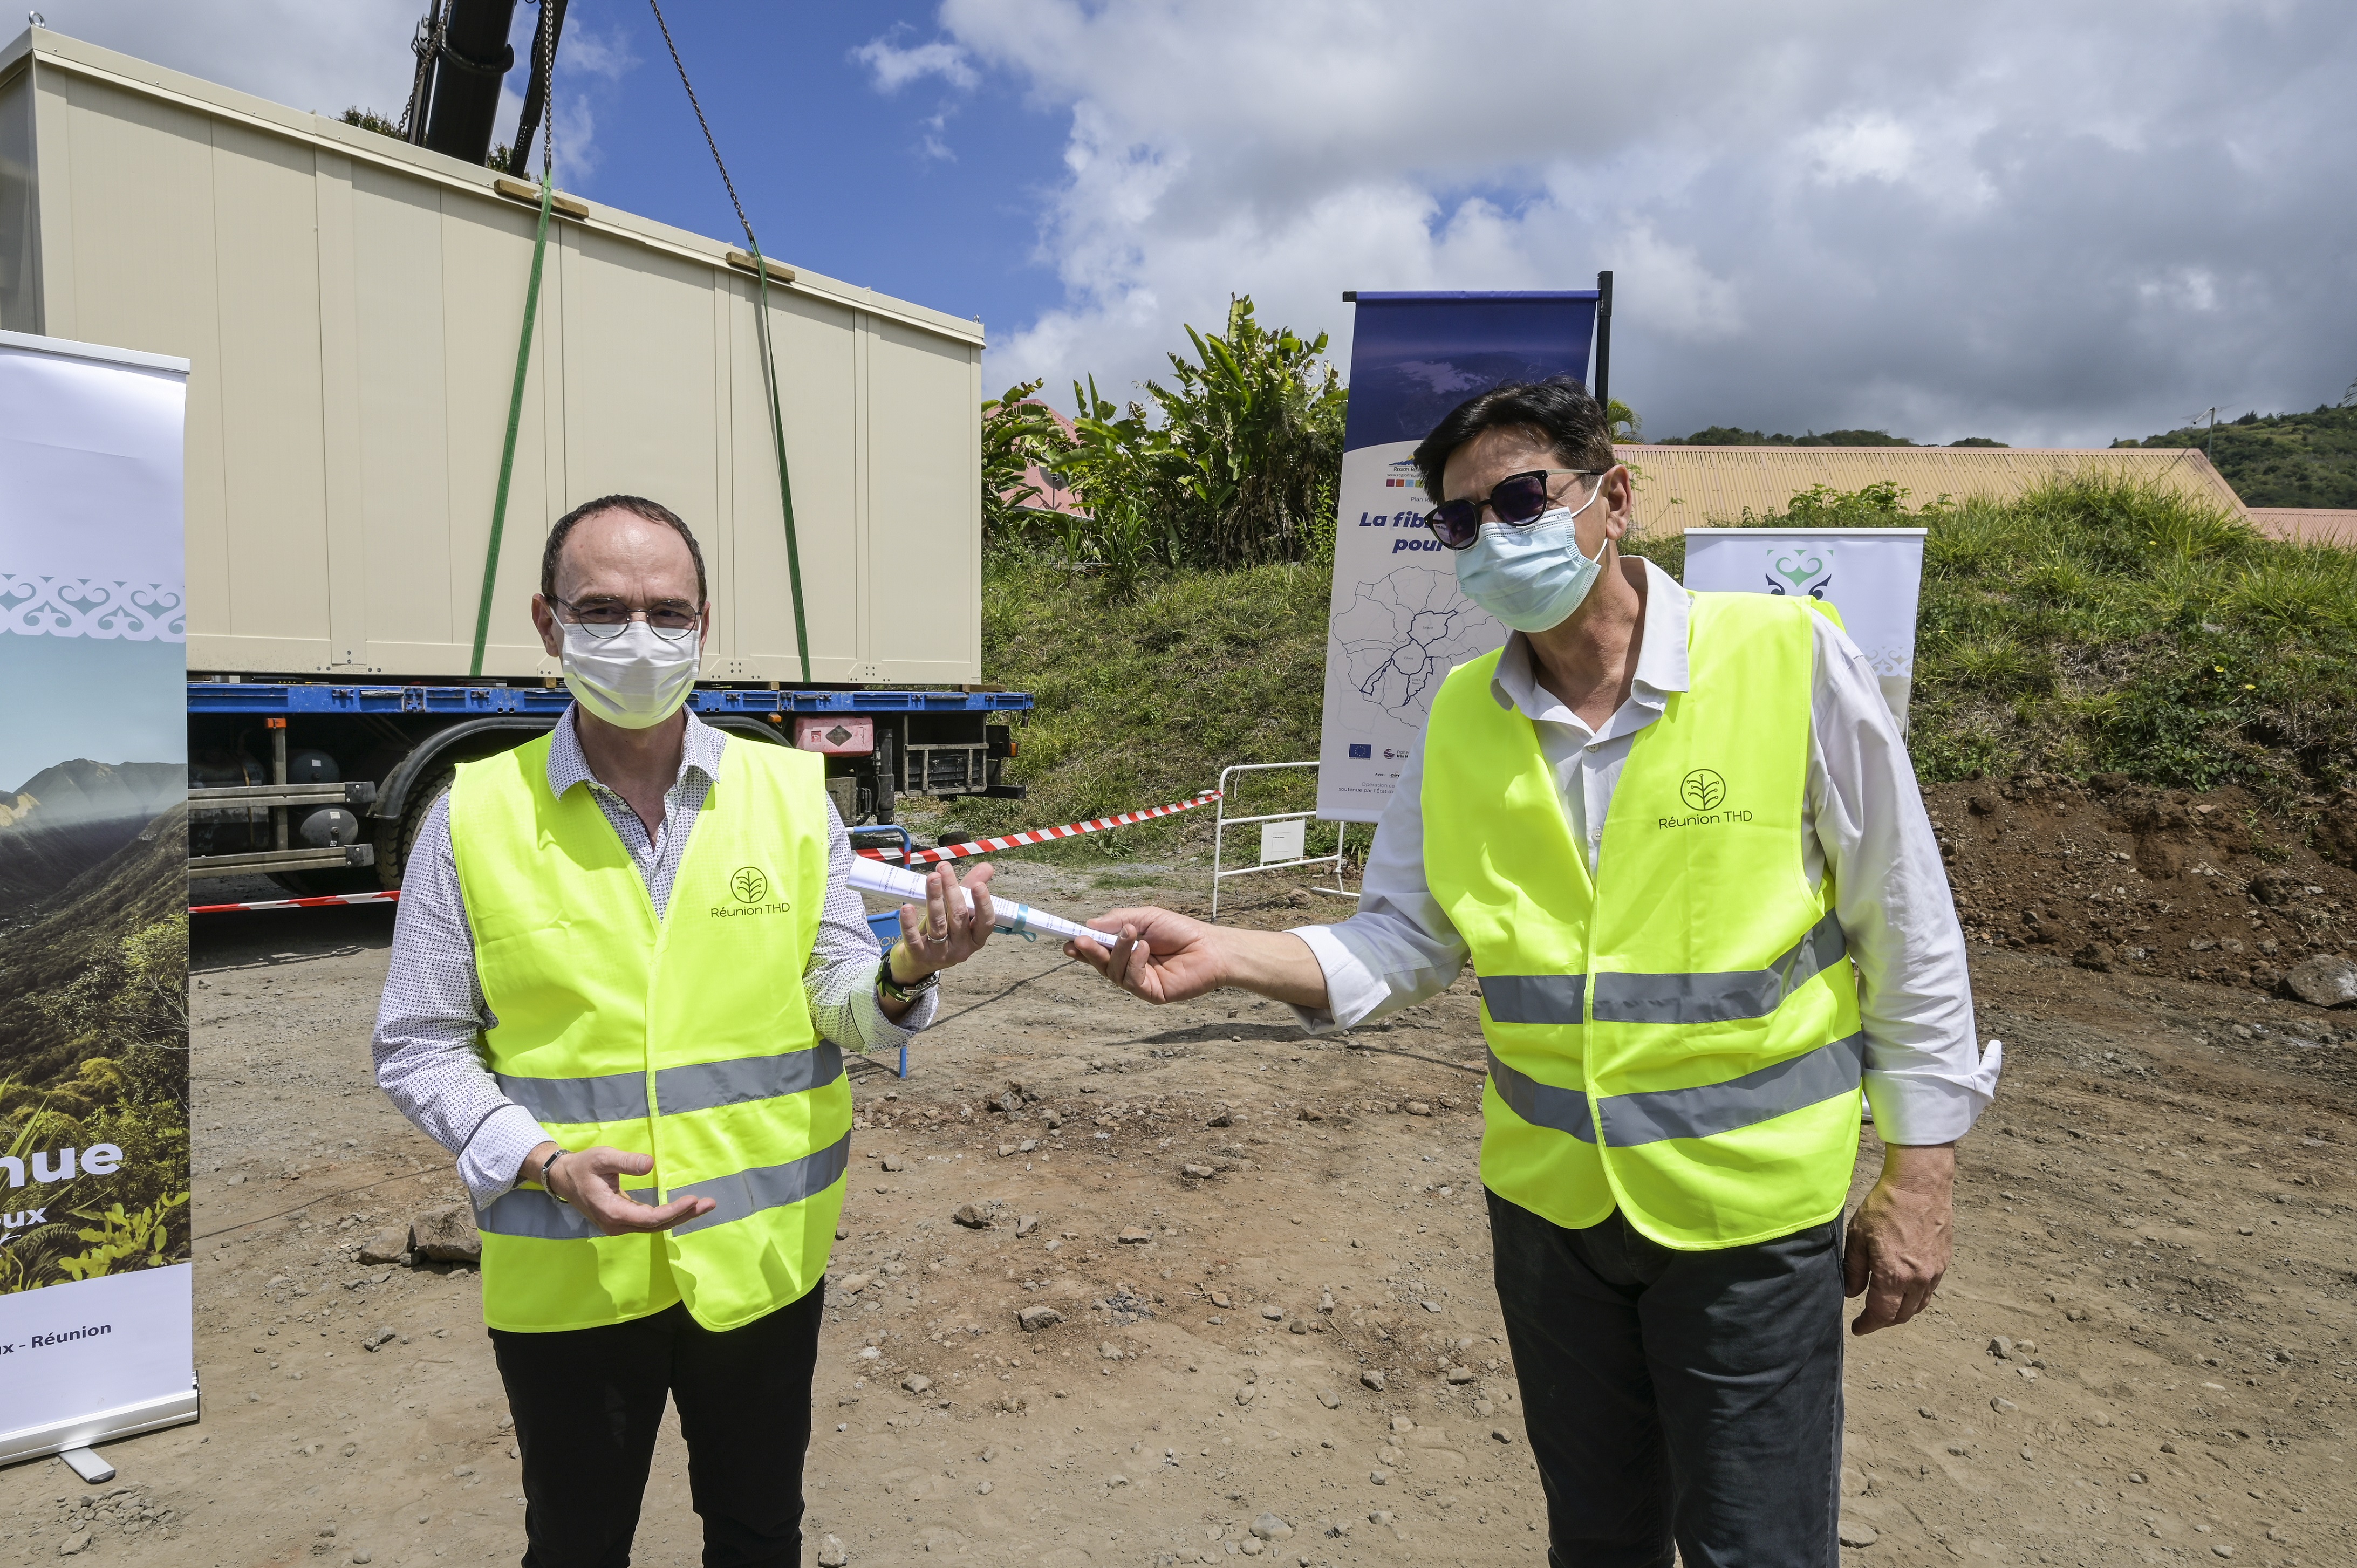 La Réunion: La fibre optique arrive à l'Entre Deux